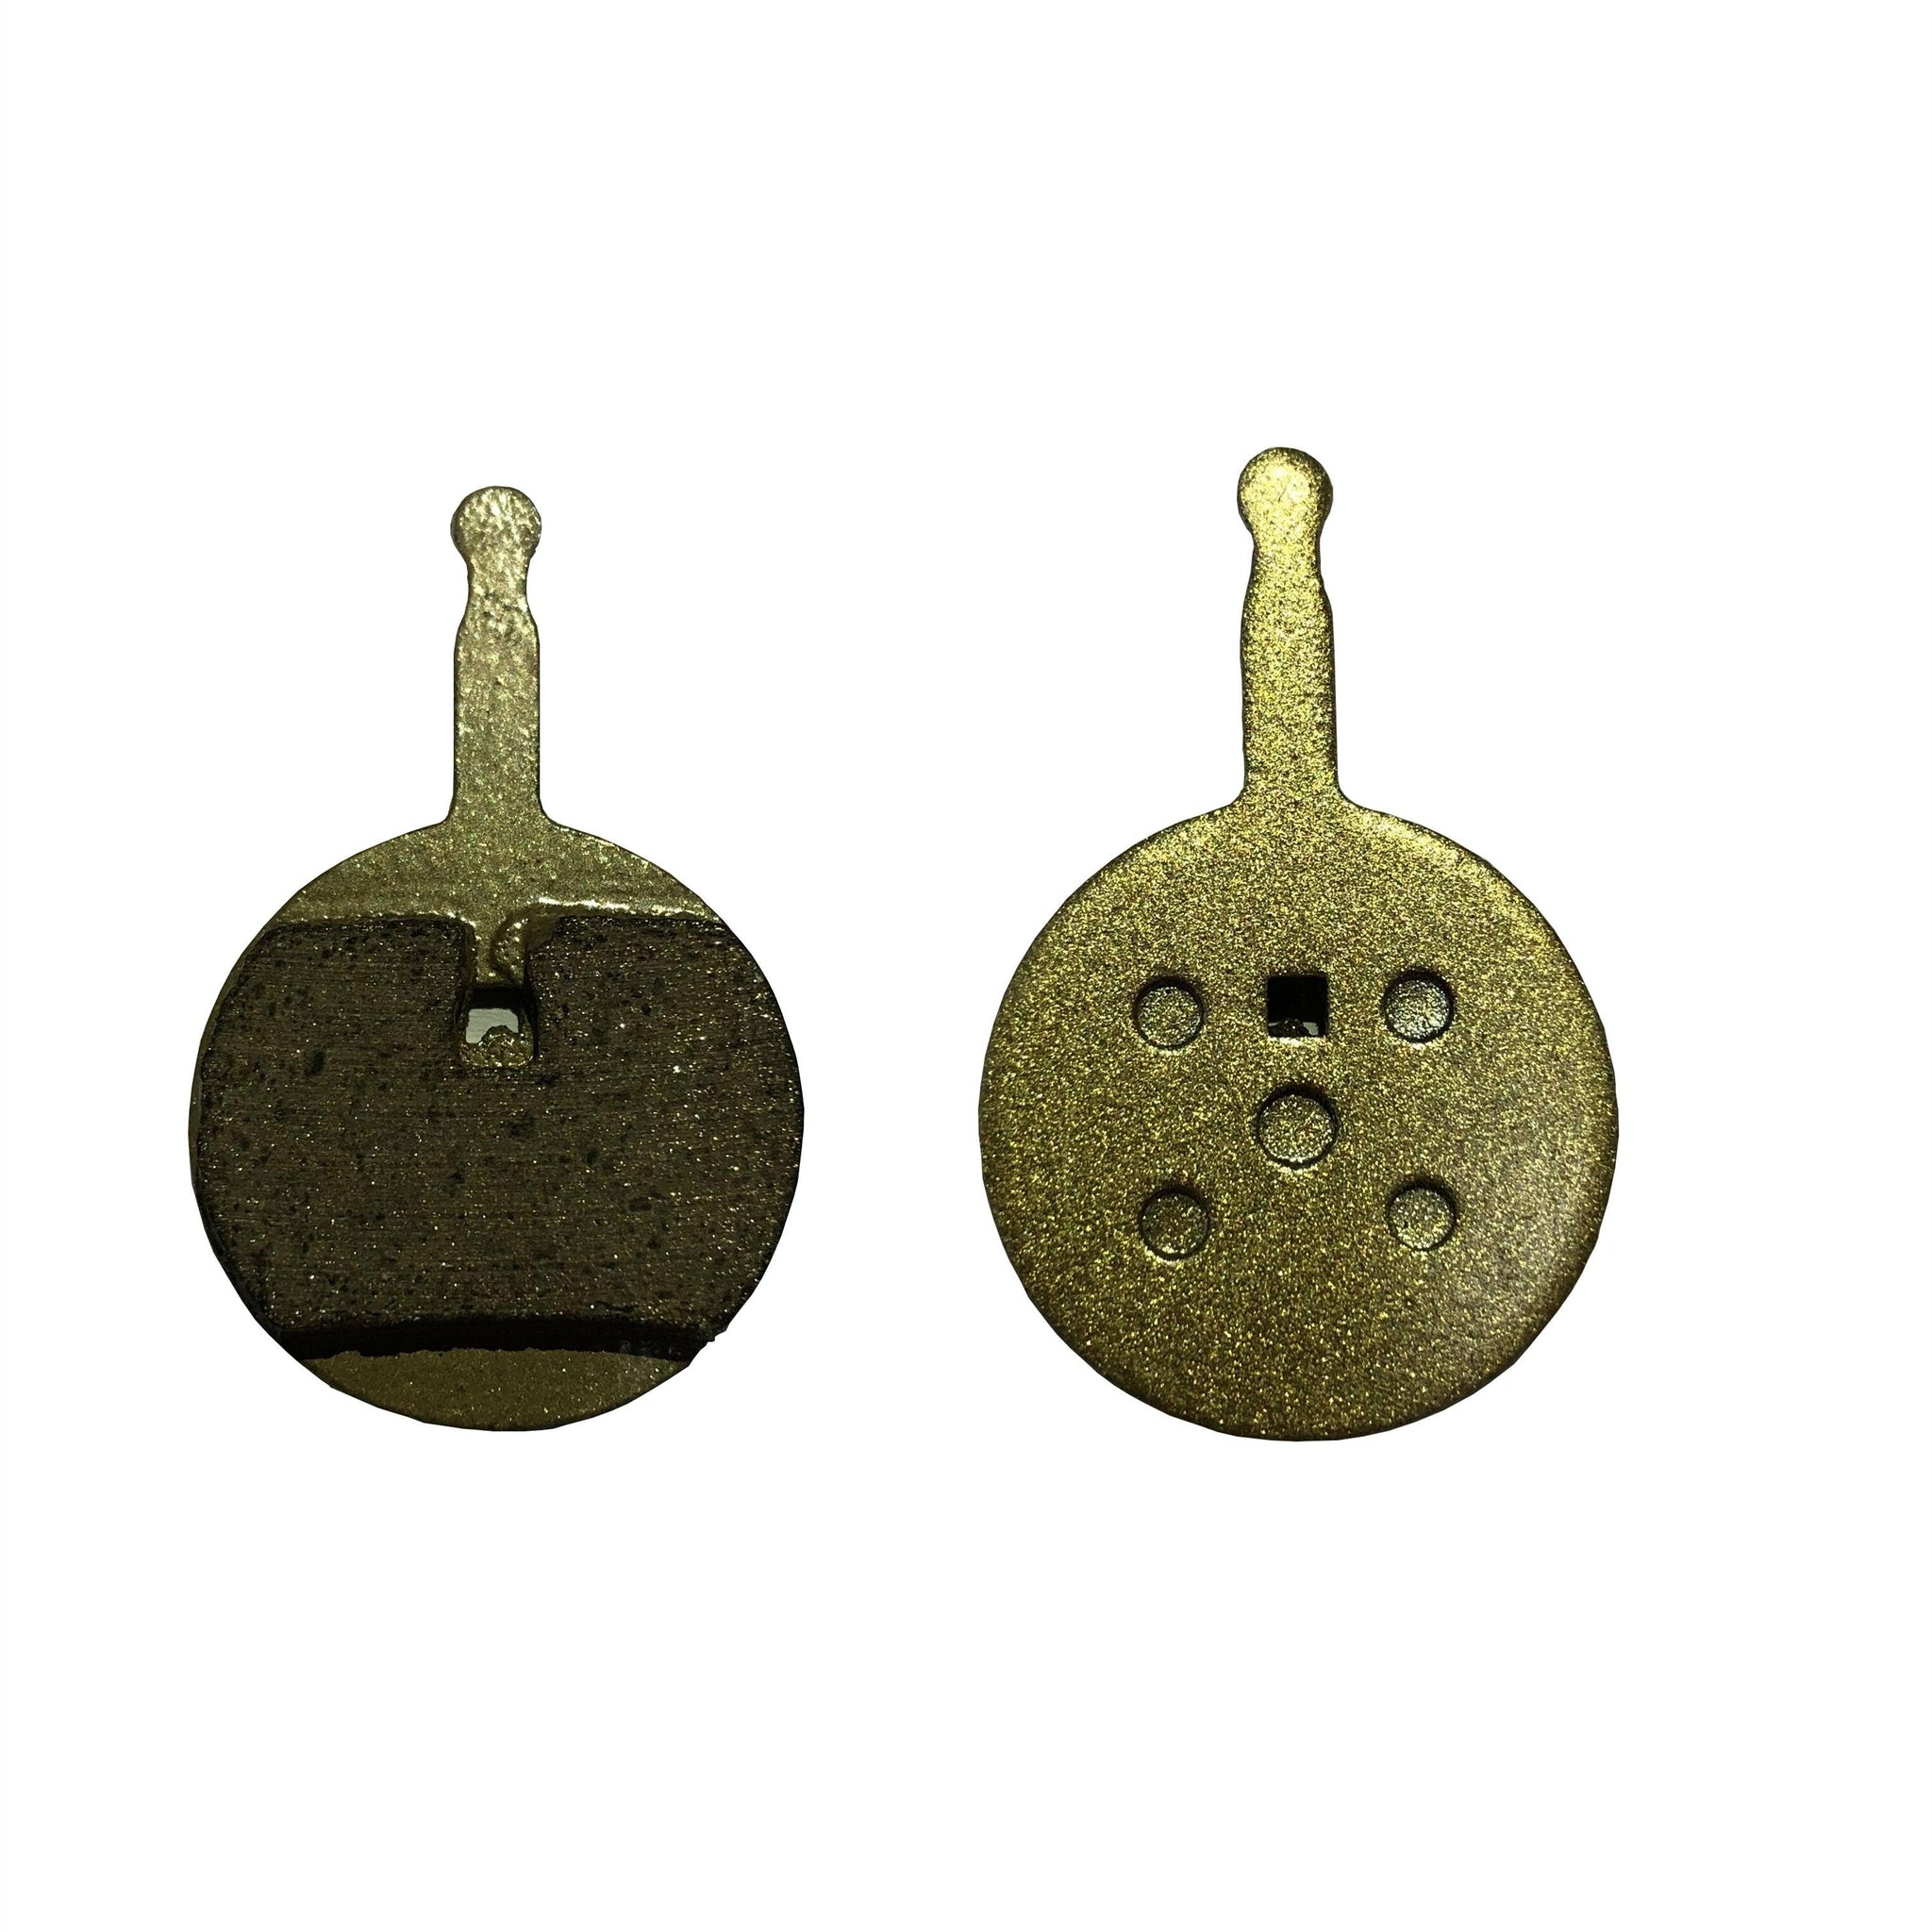 GUNAI all metal brake pads （2 pairs） - GUNAI